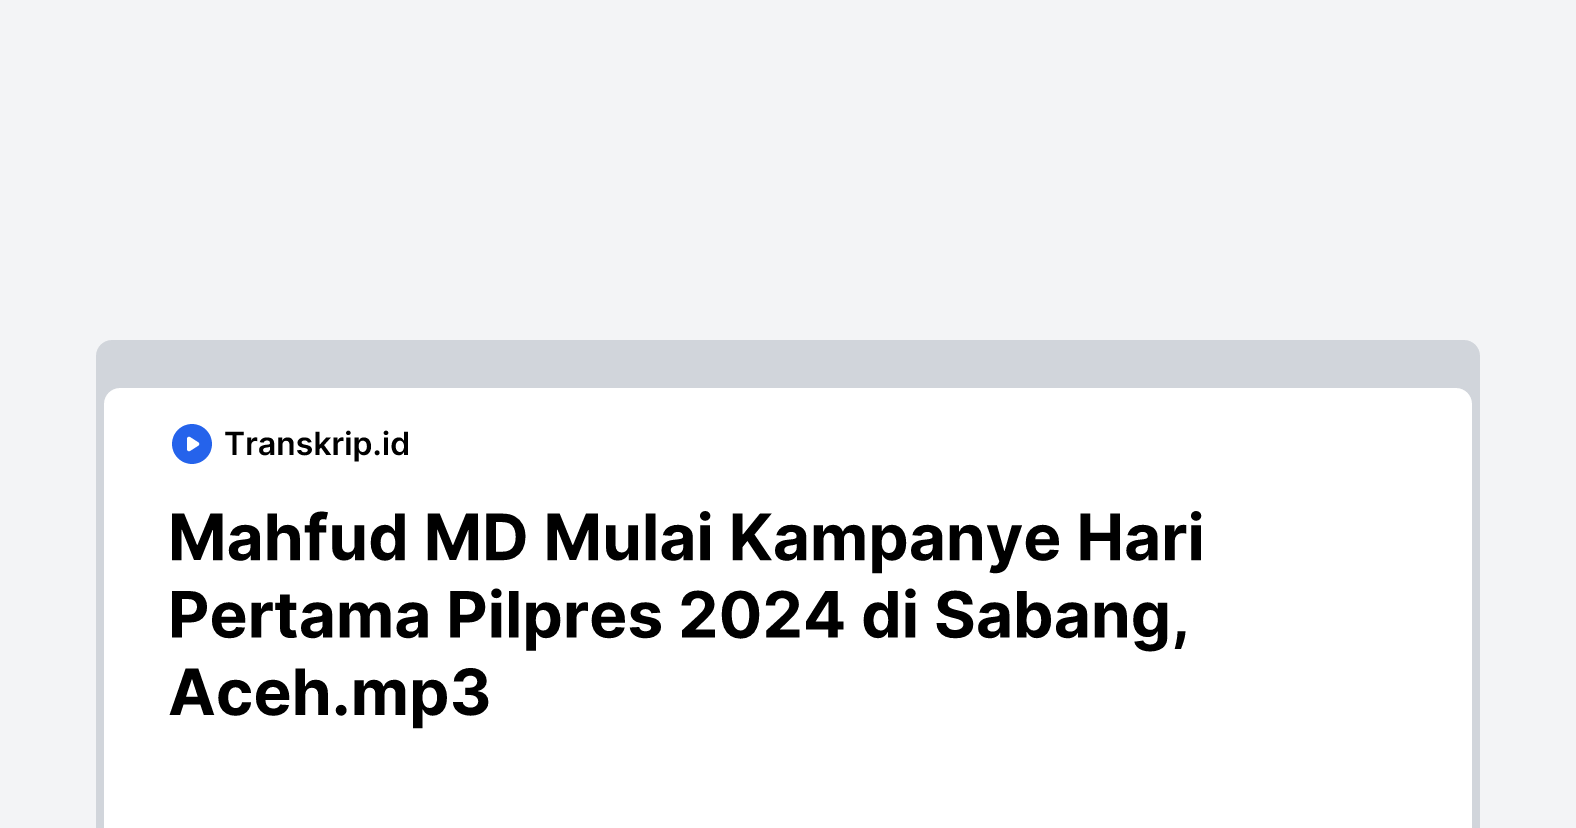 Mahfud MD Mulai Kampanye Hari Pertama Pilpres 2024 di Sabang, Aceh.mp3